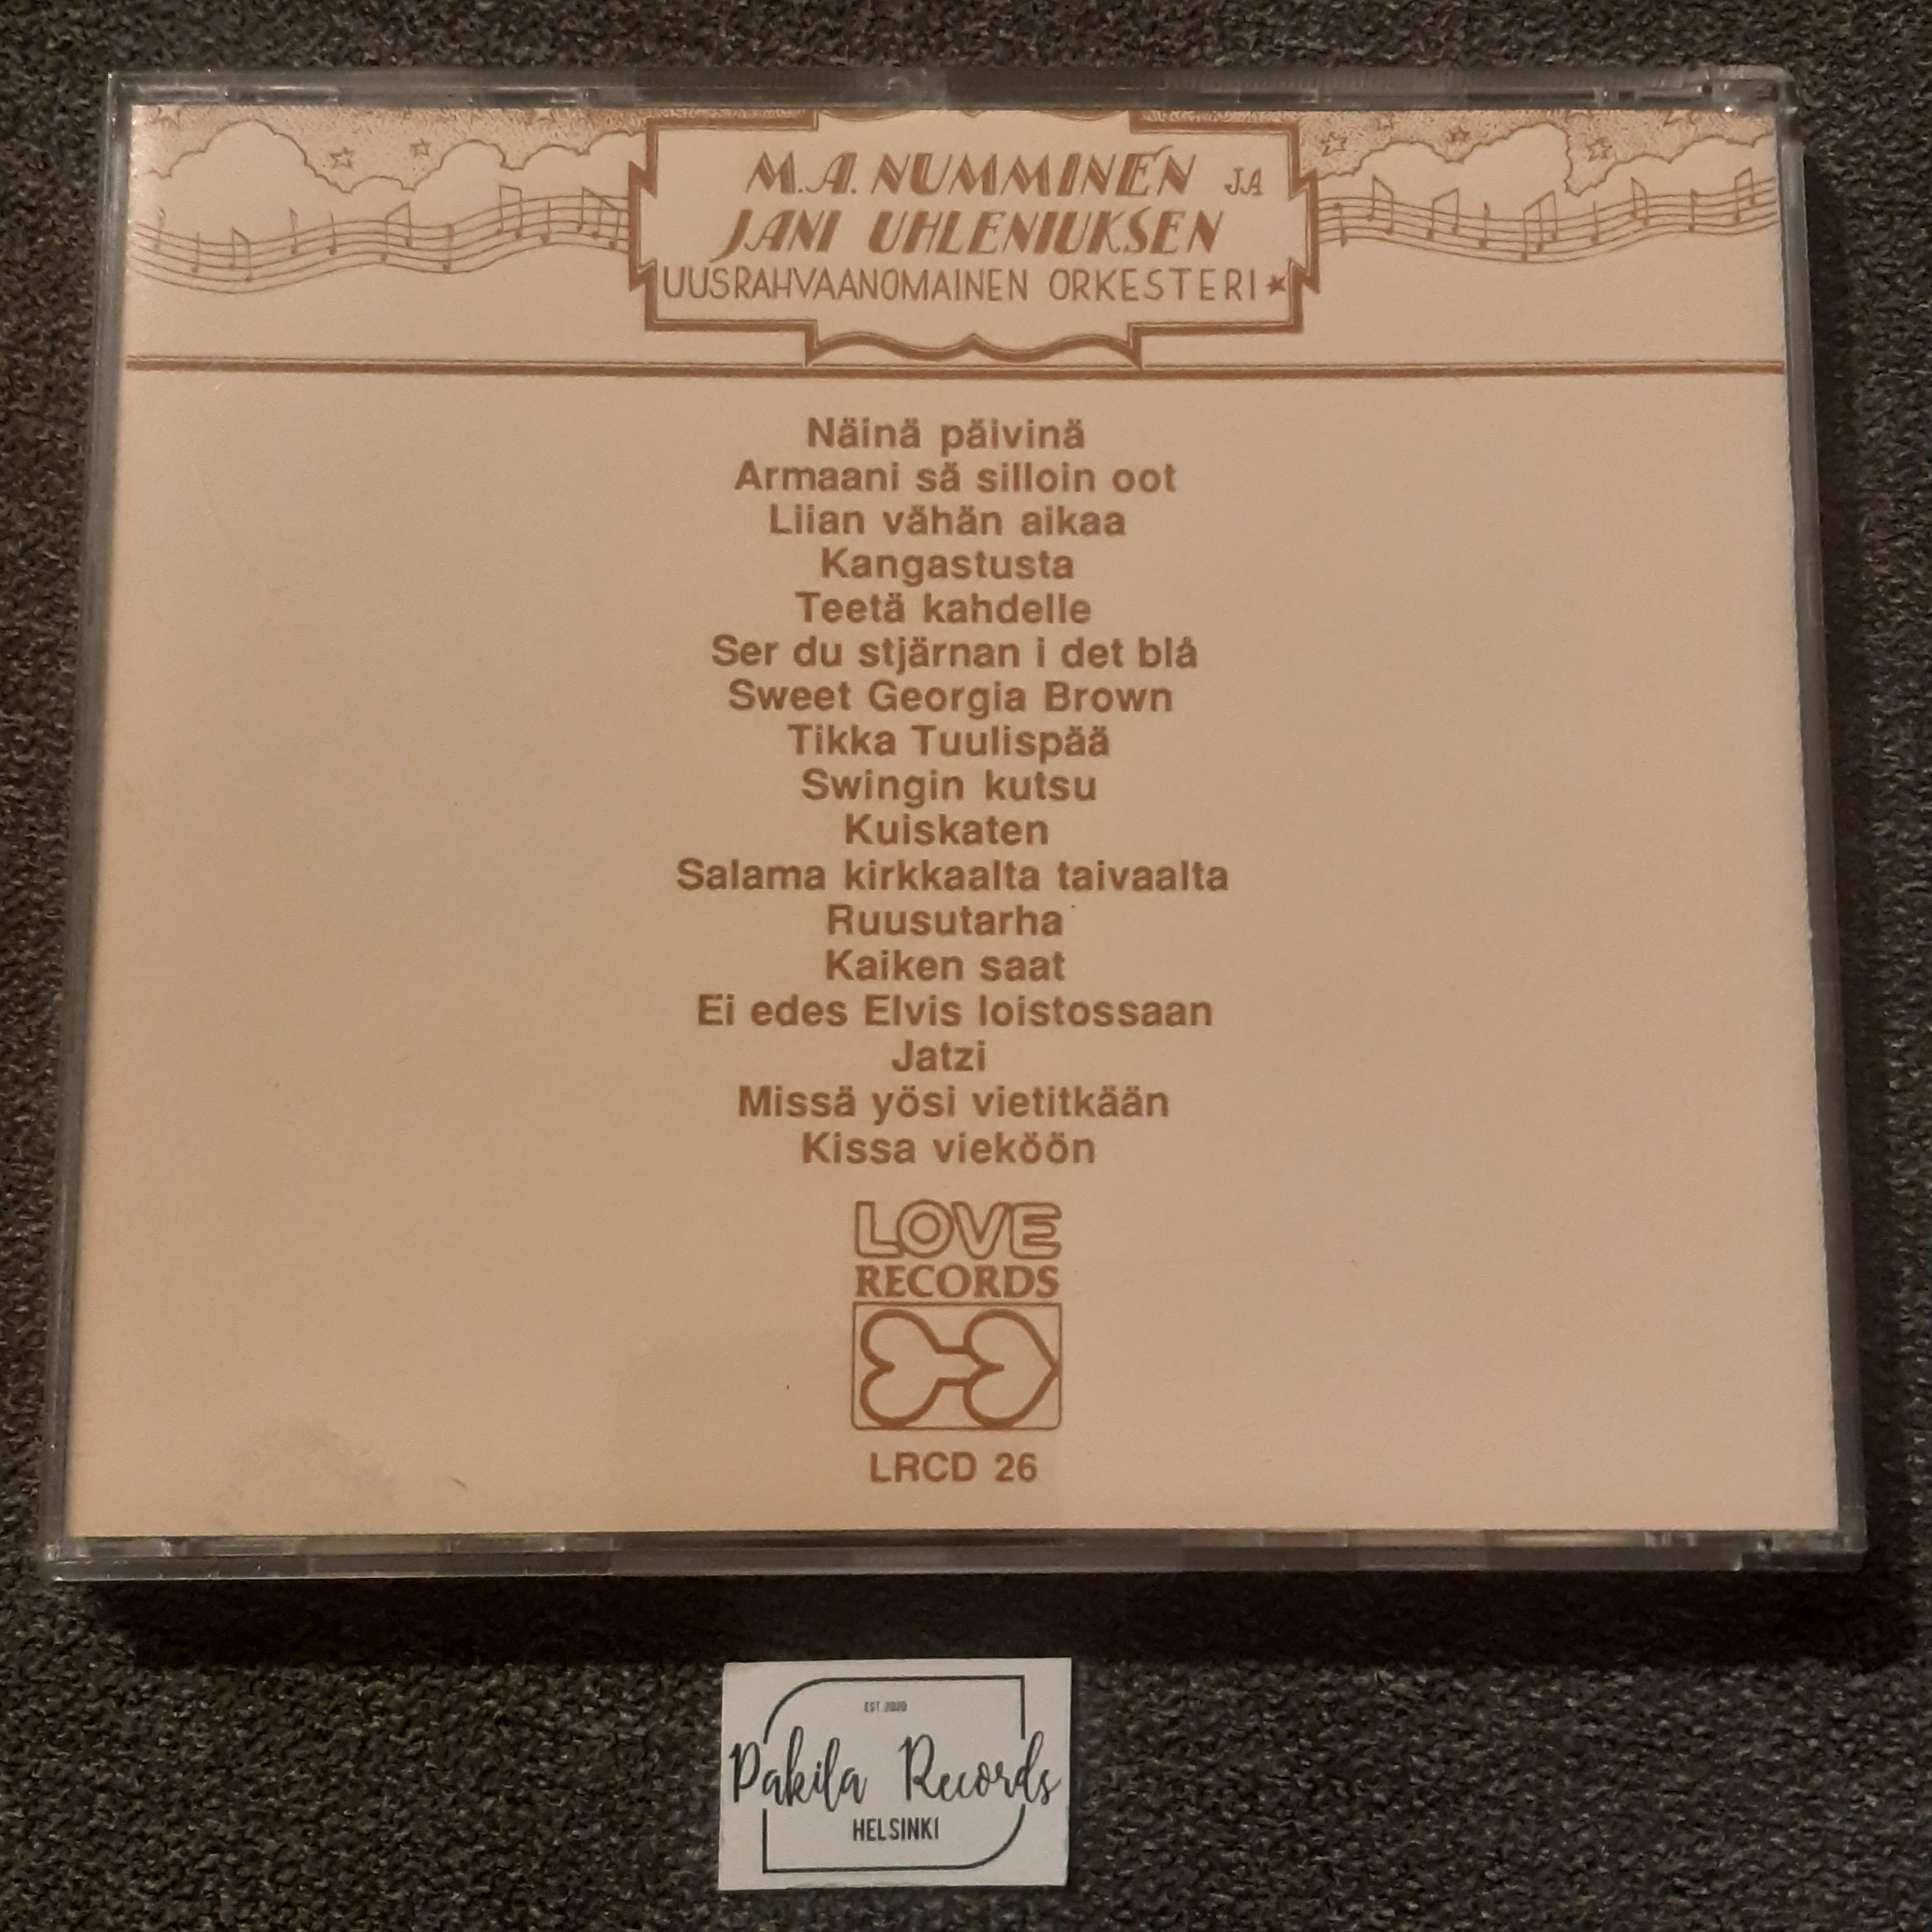 M.A. Numminen  - Swingin kutsu - CD (käytetty)